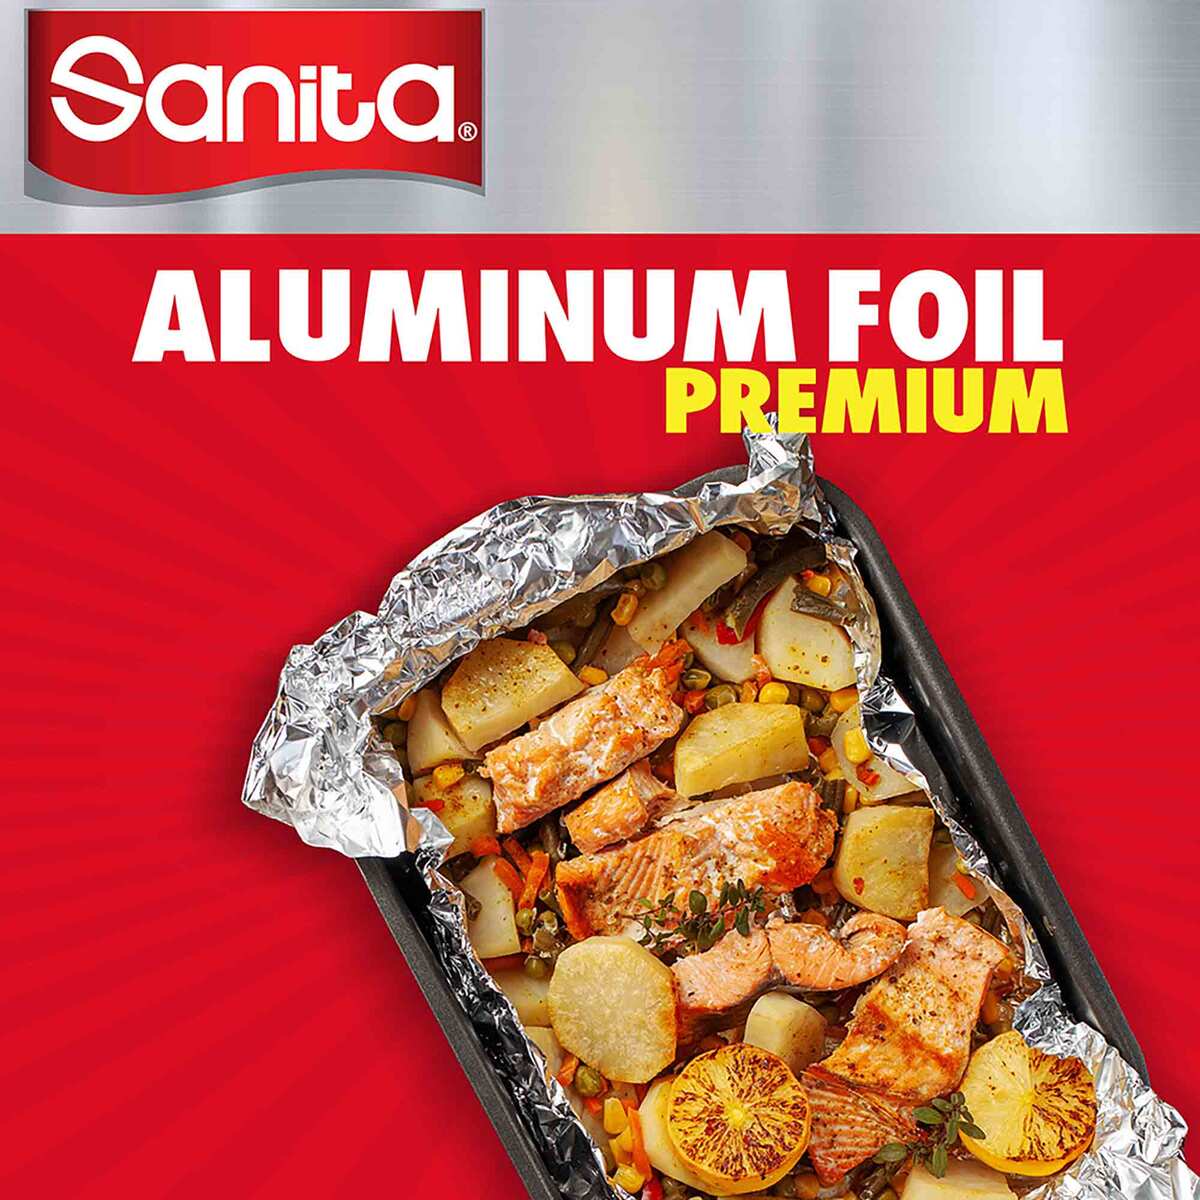 Sanita Premium Aluminum Foil Size 7.62m x 45cm Value Pack 3 pcs